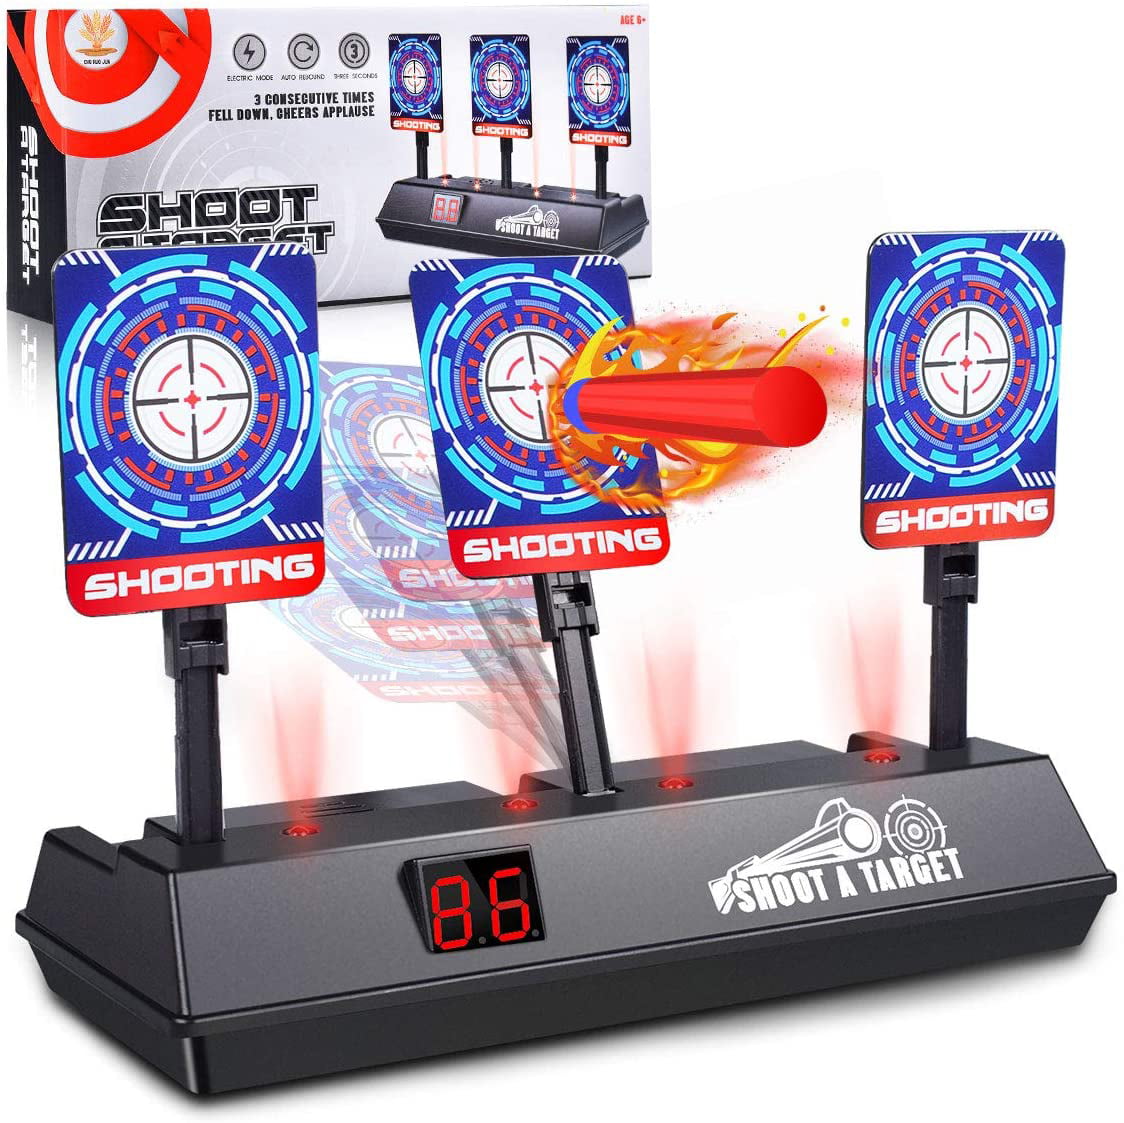 Digital Electric Scoring Auto Reset Shooting Target For Nerf Gun Toy Kids Gift 